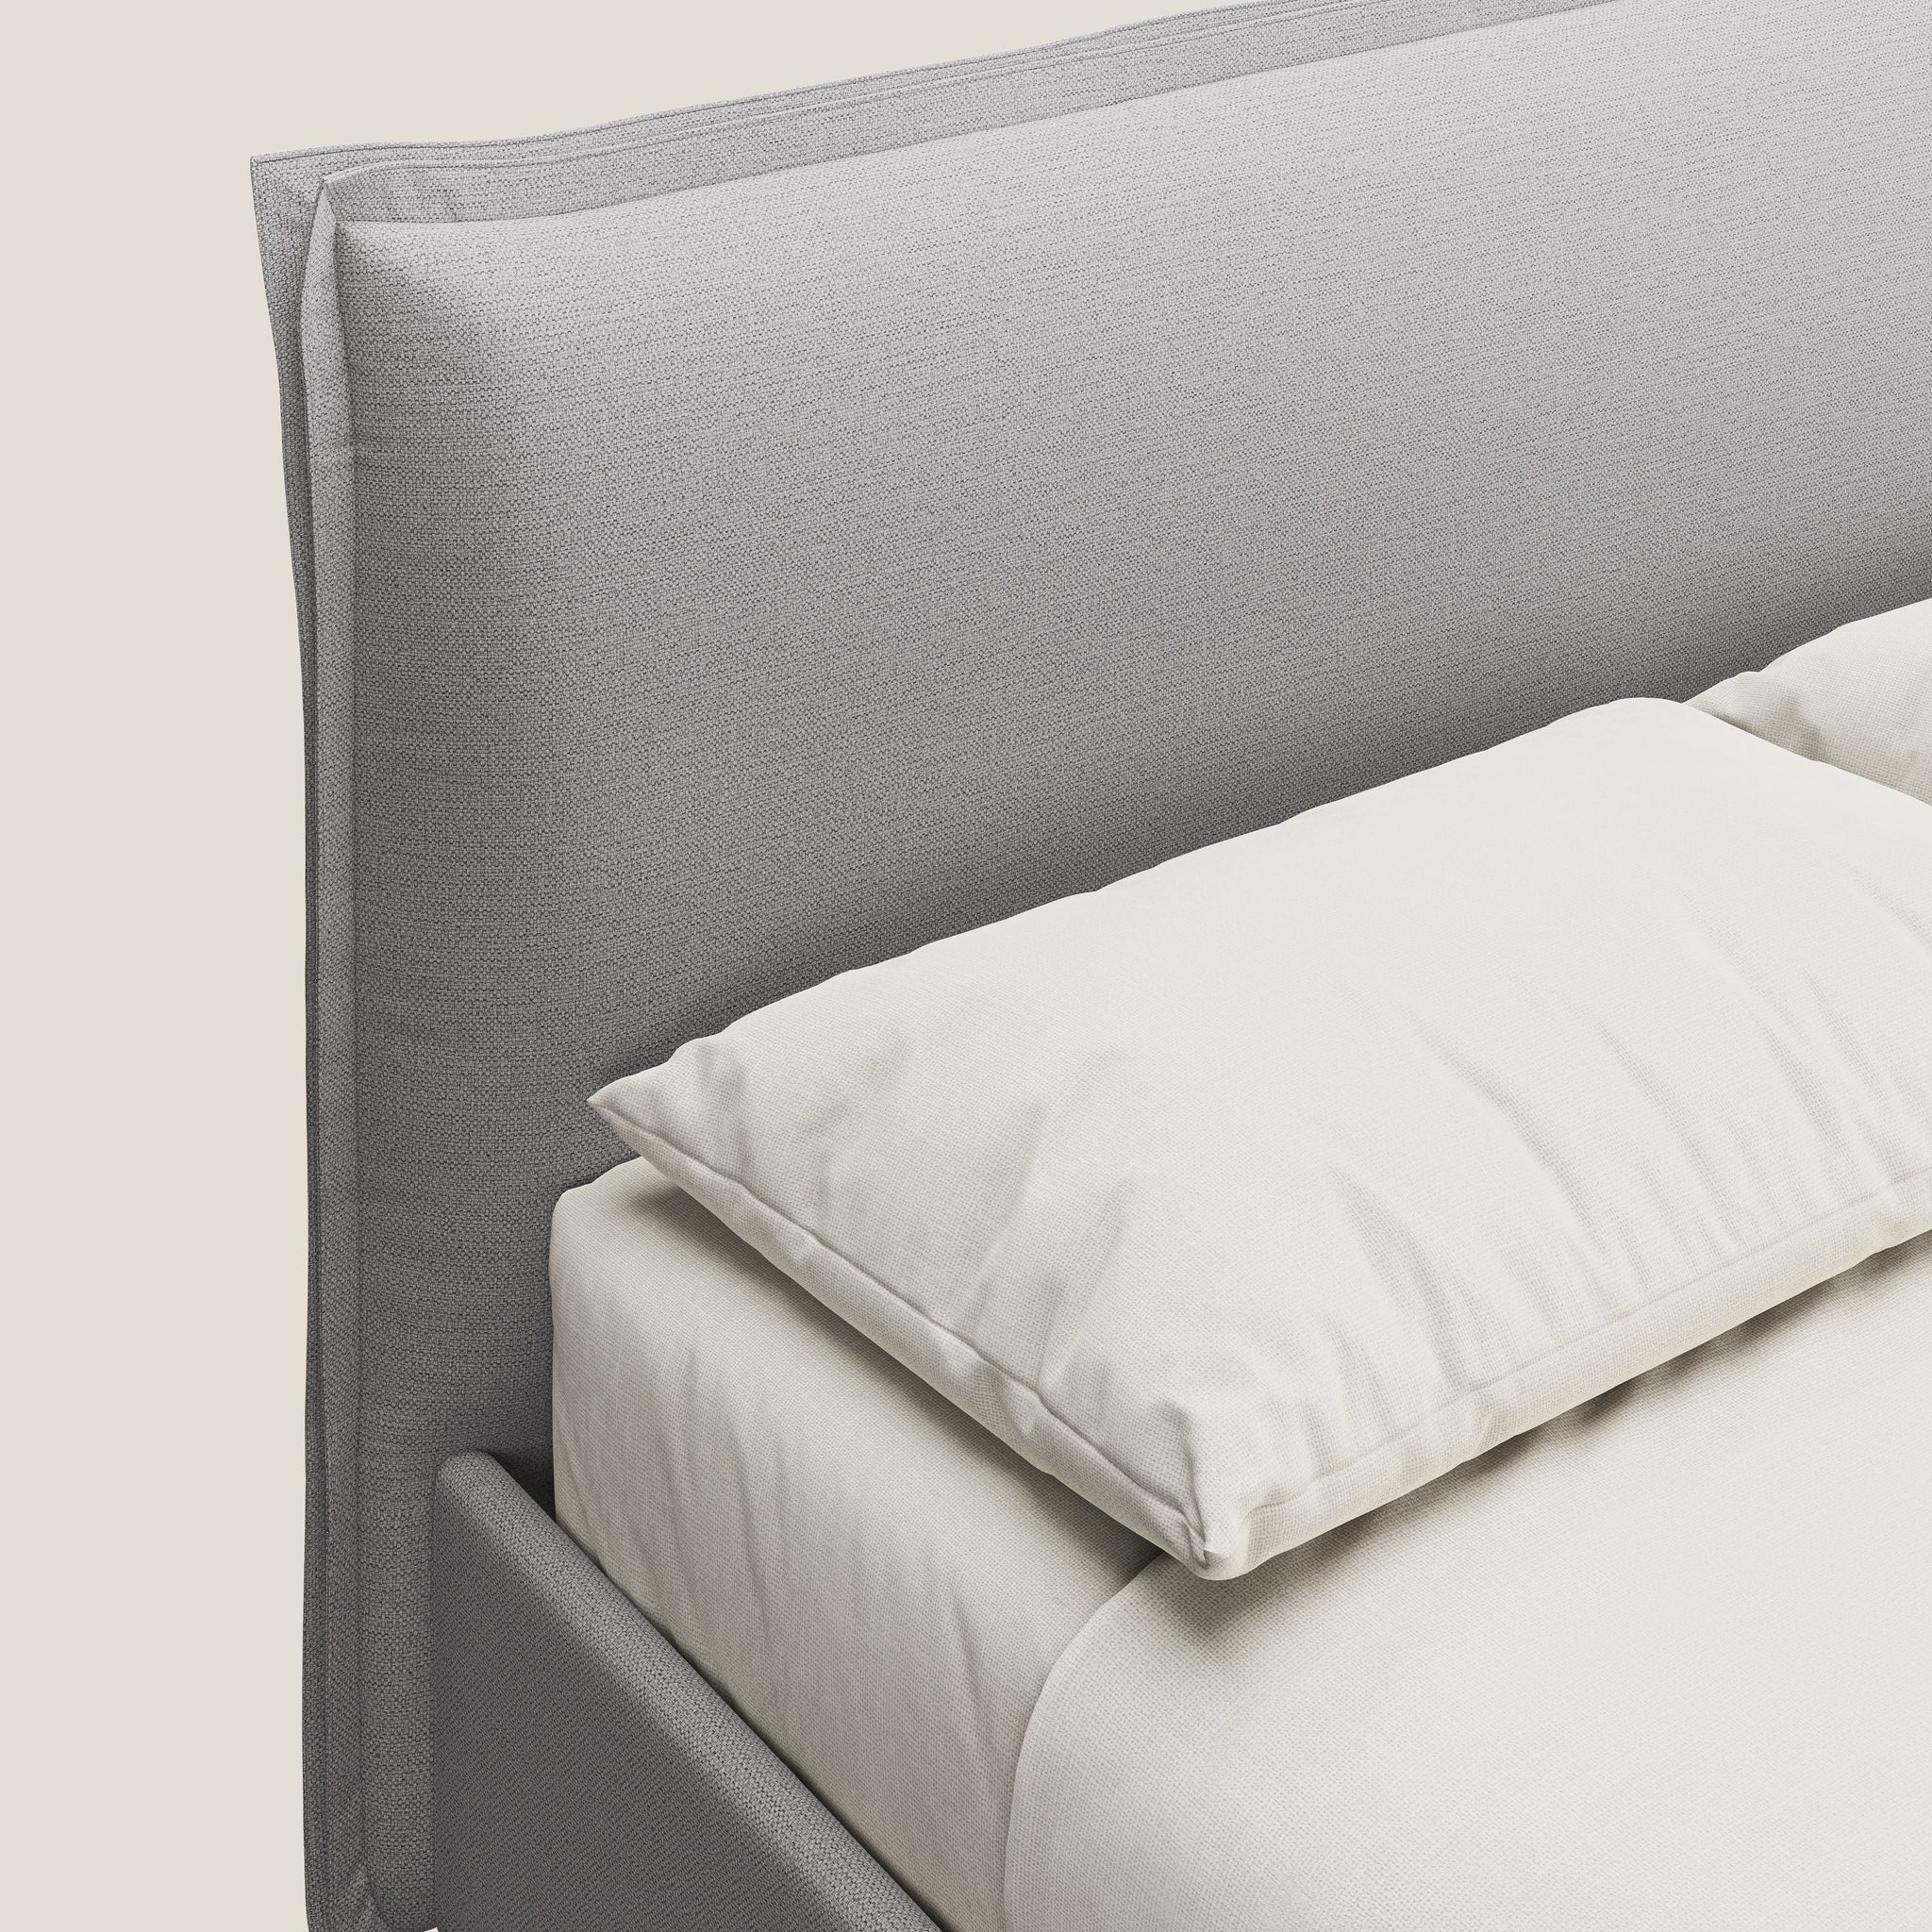 Hans lit rembourré avec coffre au style minimaliste en tissu imperméable T19